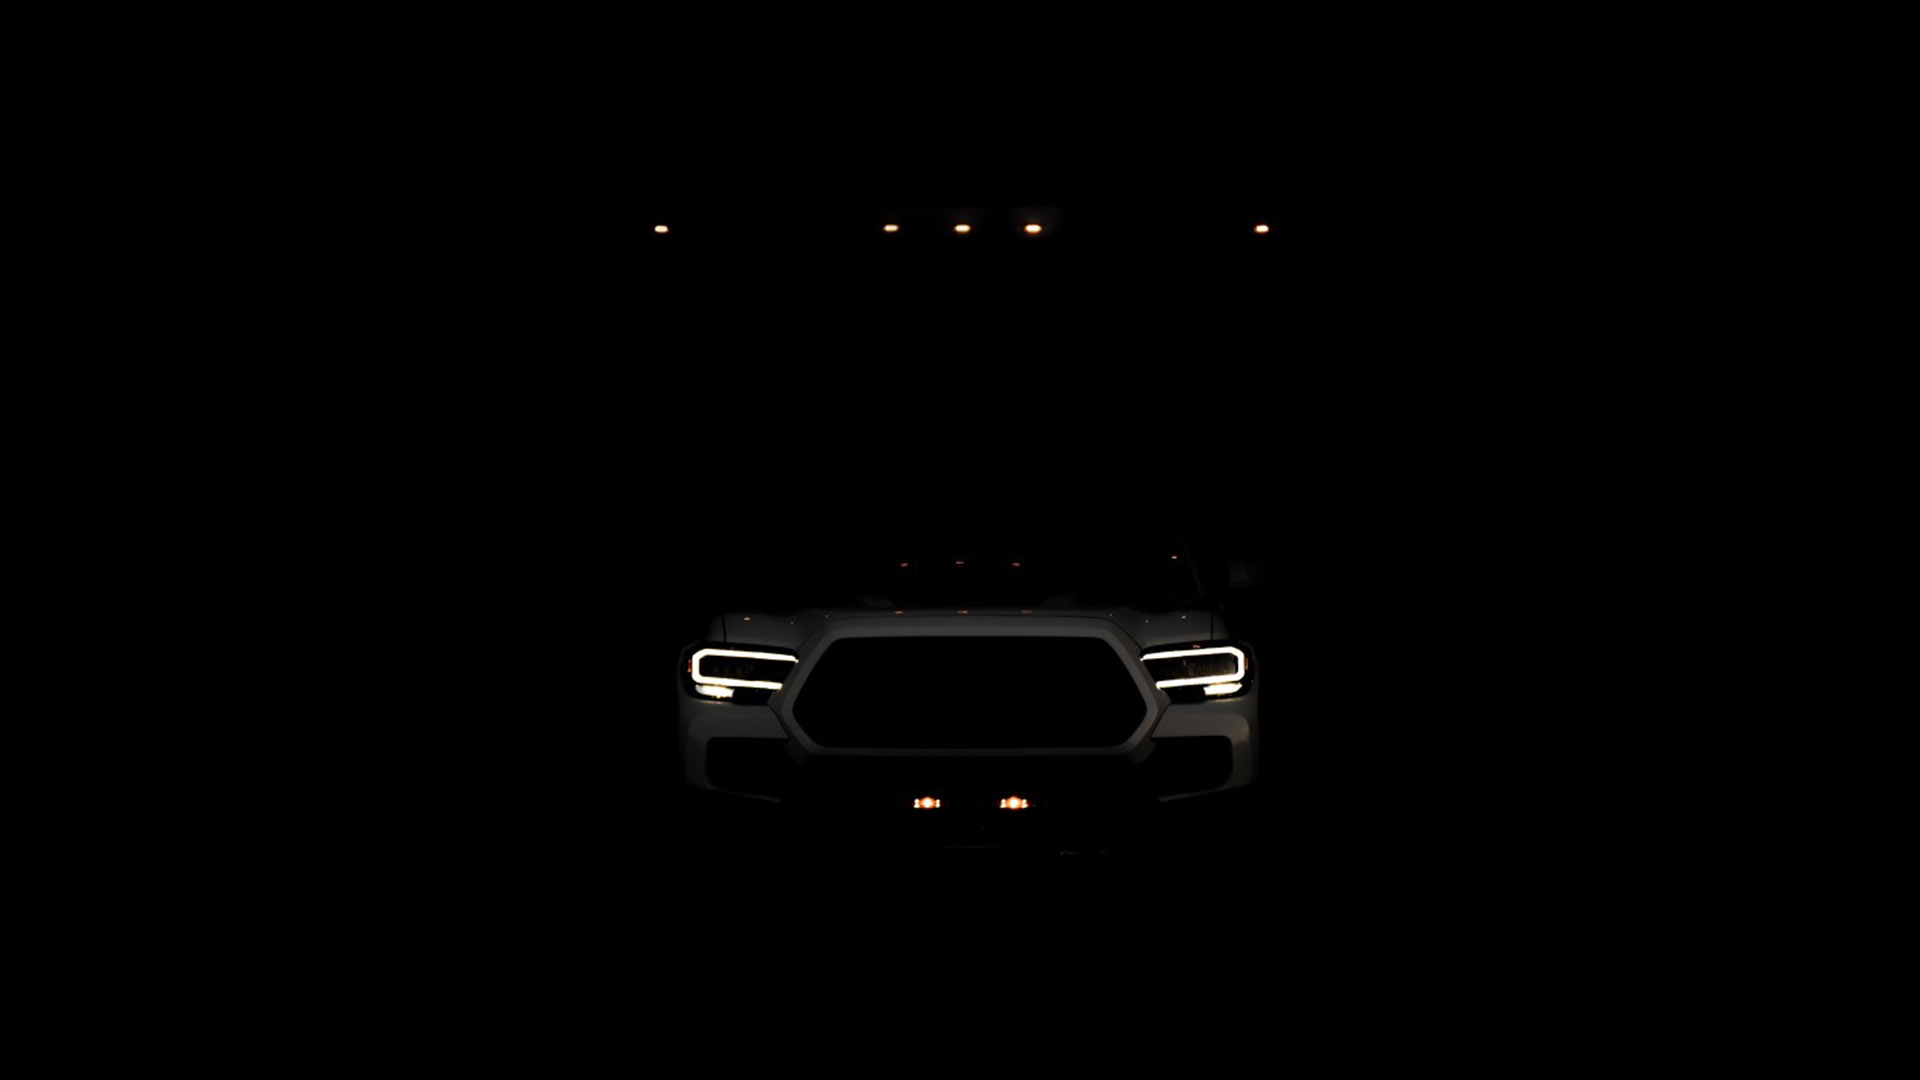 نمای تاریک جلو خودروی تفریحی مبتنی بر وانت پیکاپ تویوتا تاکوما / Toyota Tacoma 4x4 RV سفید رنگ